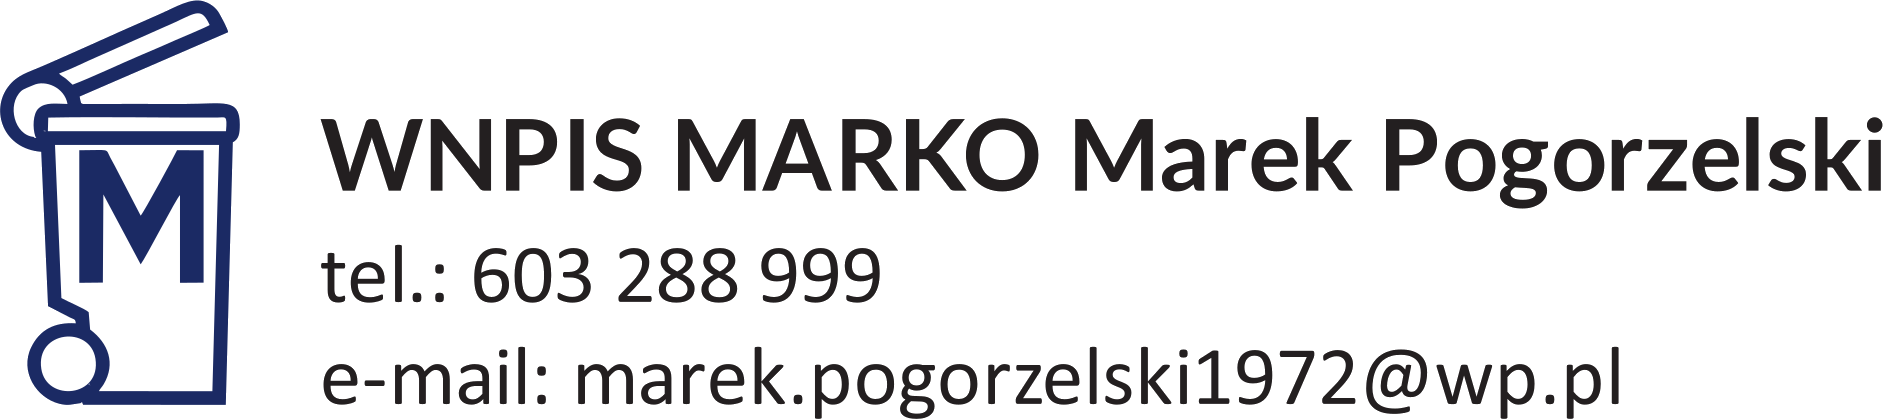 Logo - Wywóz nieczystości stałych i płynnych - Pogorzelski Andrzej tel.: 603 288 999 e-mail: marek.pogorzelski1972@wp.pl